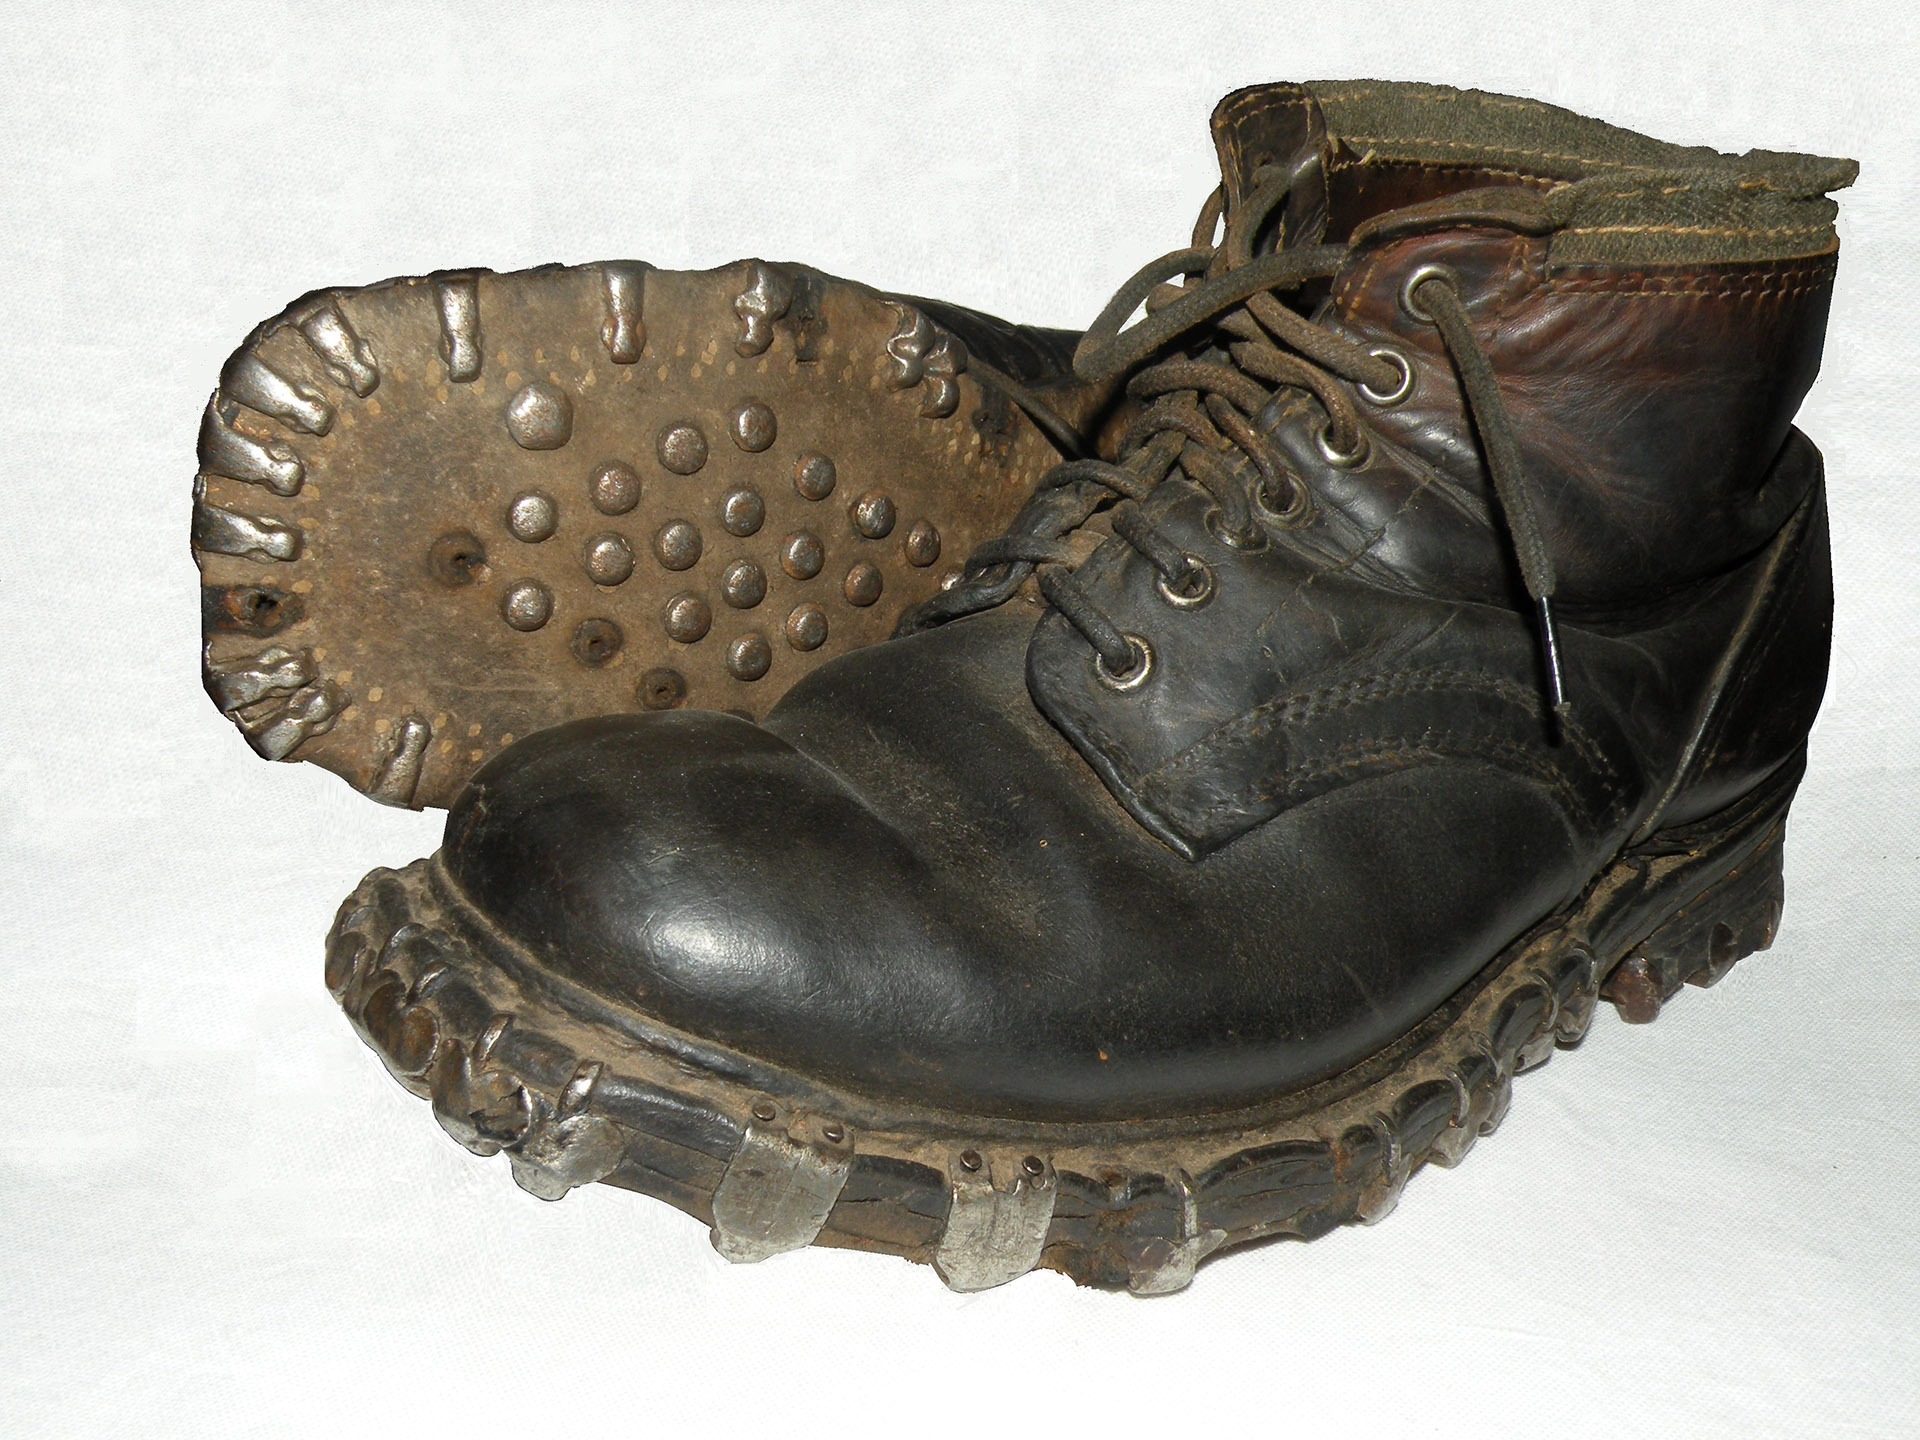 Tyskerne hadde noen forferdelige sko med jernknaster. Når man marsjerte gav disse støvlene en veldig larm. Verst var Gebirgsjägerne - de tyske alpejegerne.  Etter krigen måtte det legges nye gulv i hus som de hadde oppholdt seg i.  Skoene hadde bokstavelig "spist" opp gulvplankene.